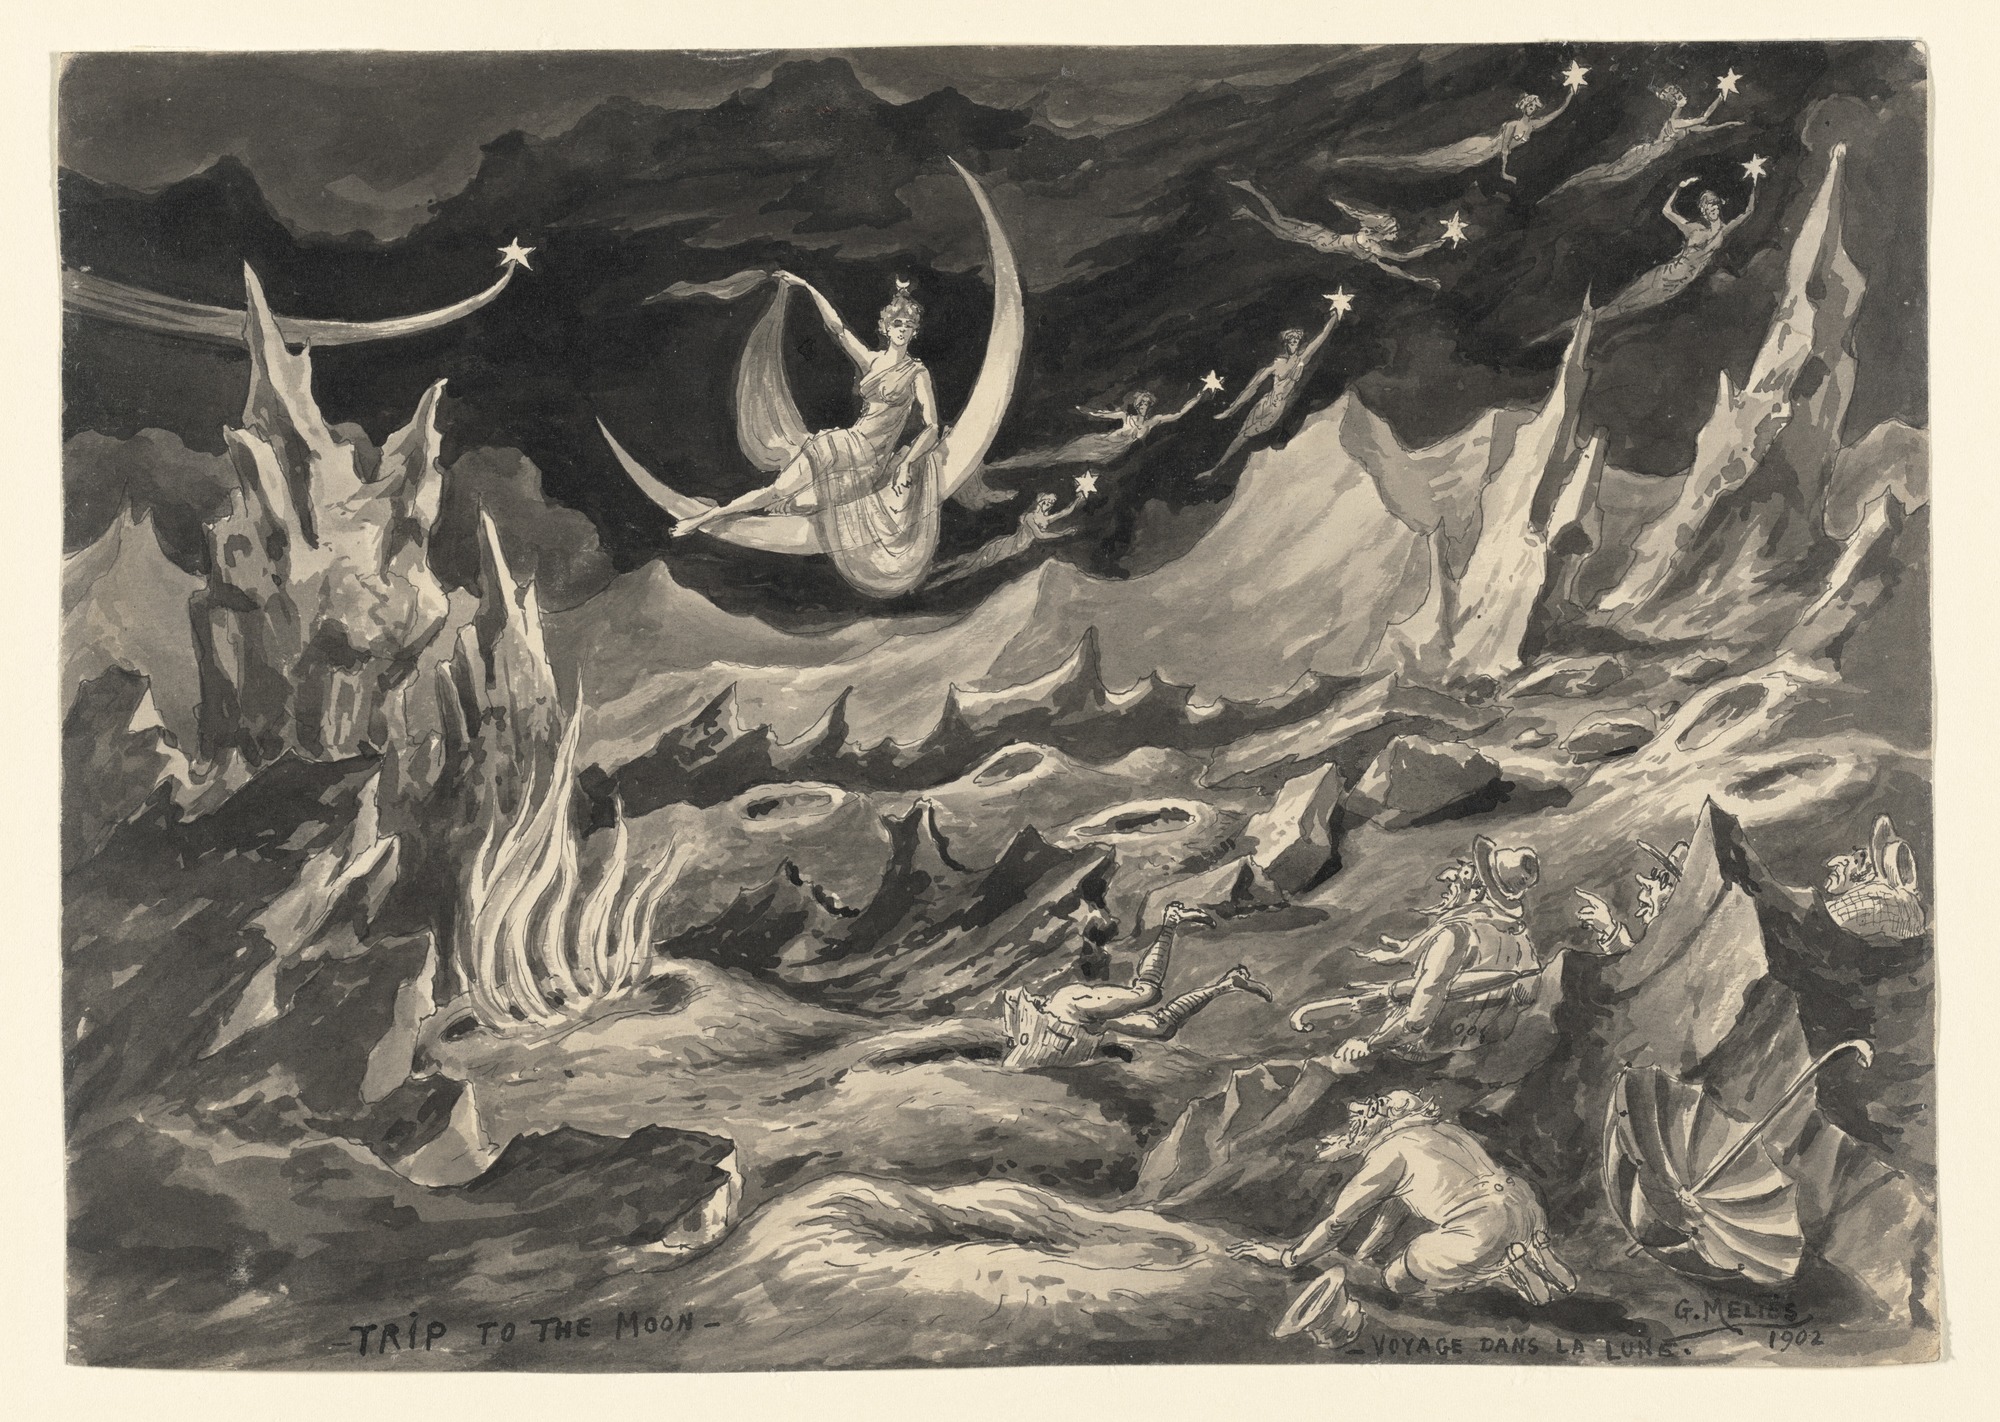 Peinture Voyage dans la Lune de Georges Méliès